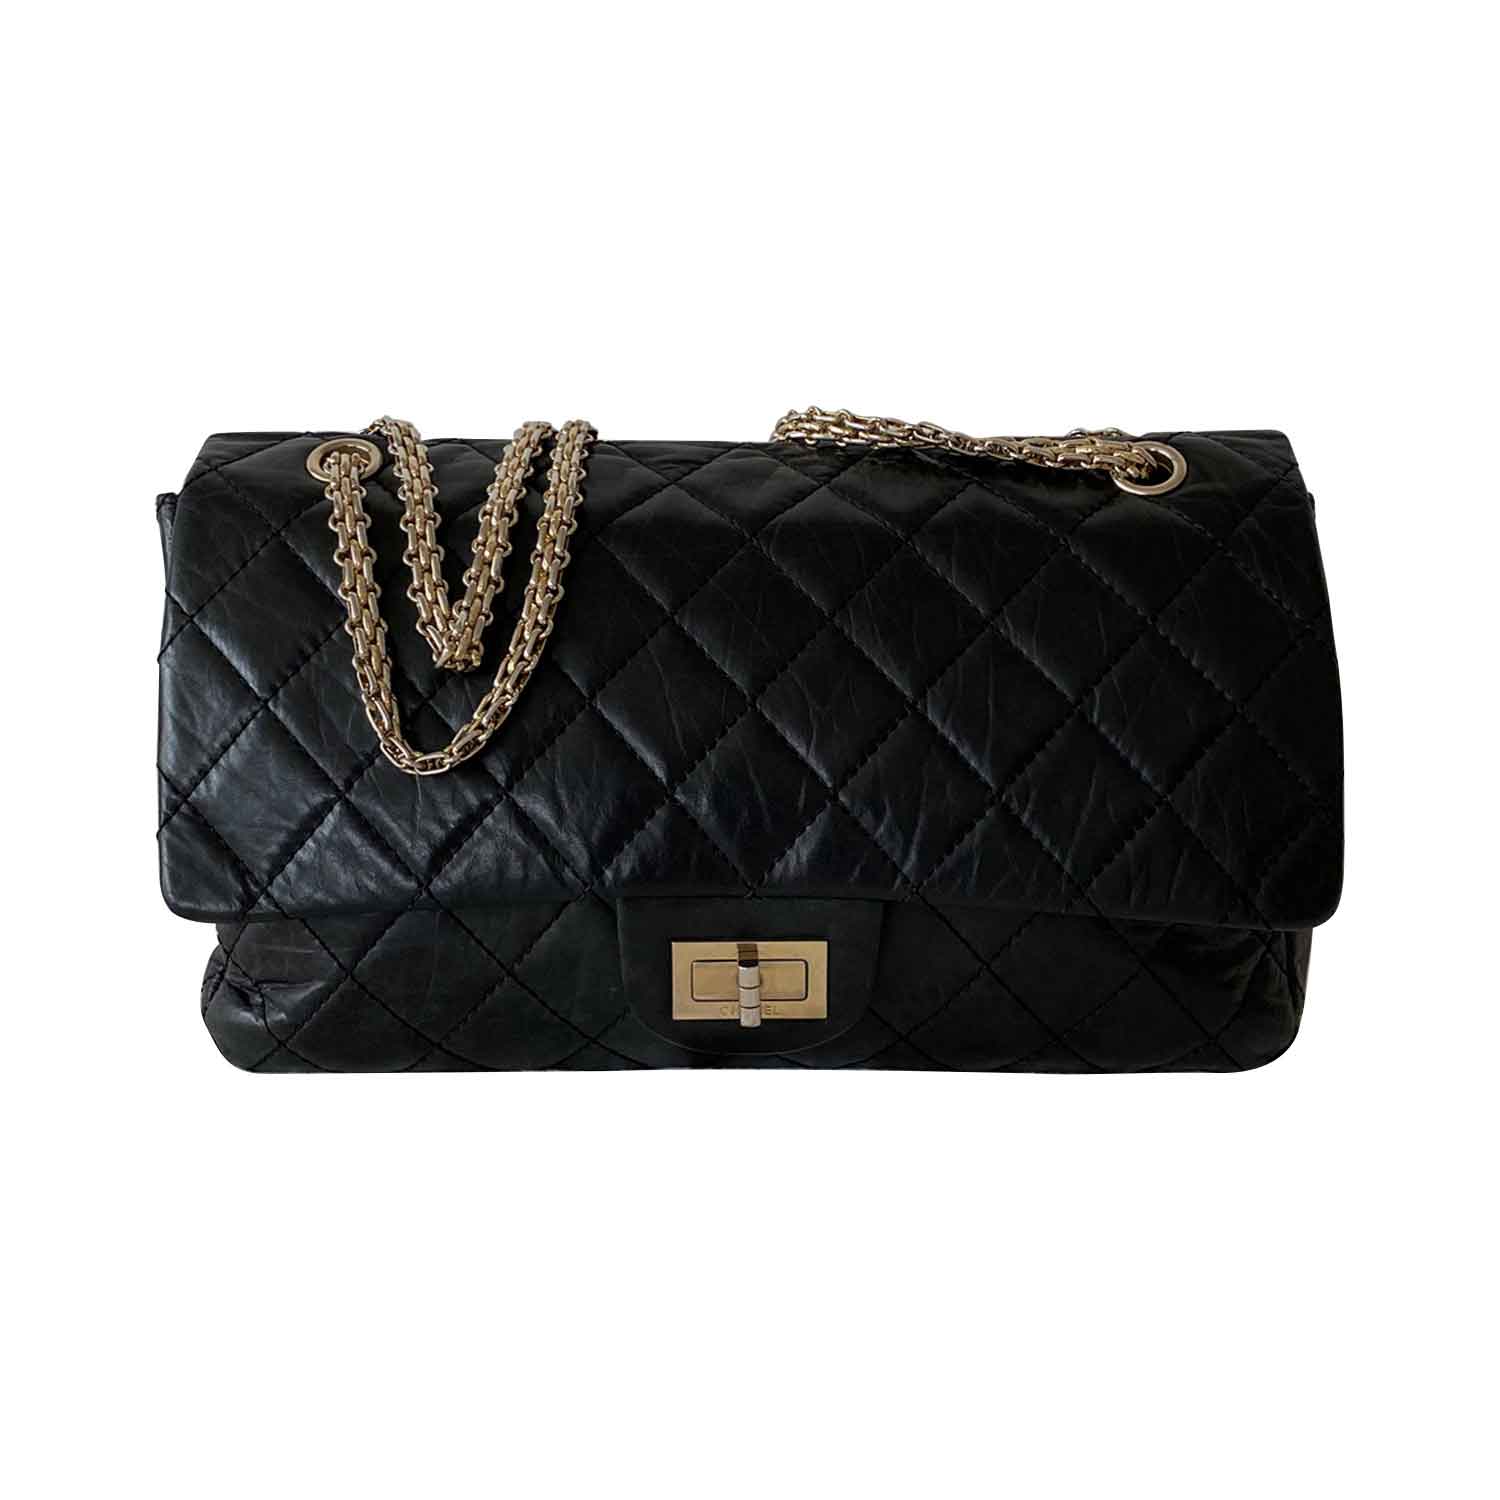 Shop authentic Chanel 2.55 Vintage Reissue 227 Double Flap Bag at ...